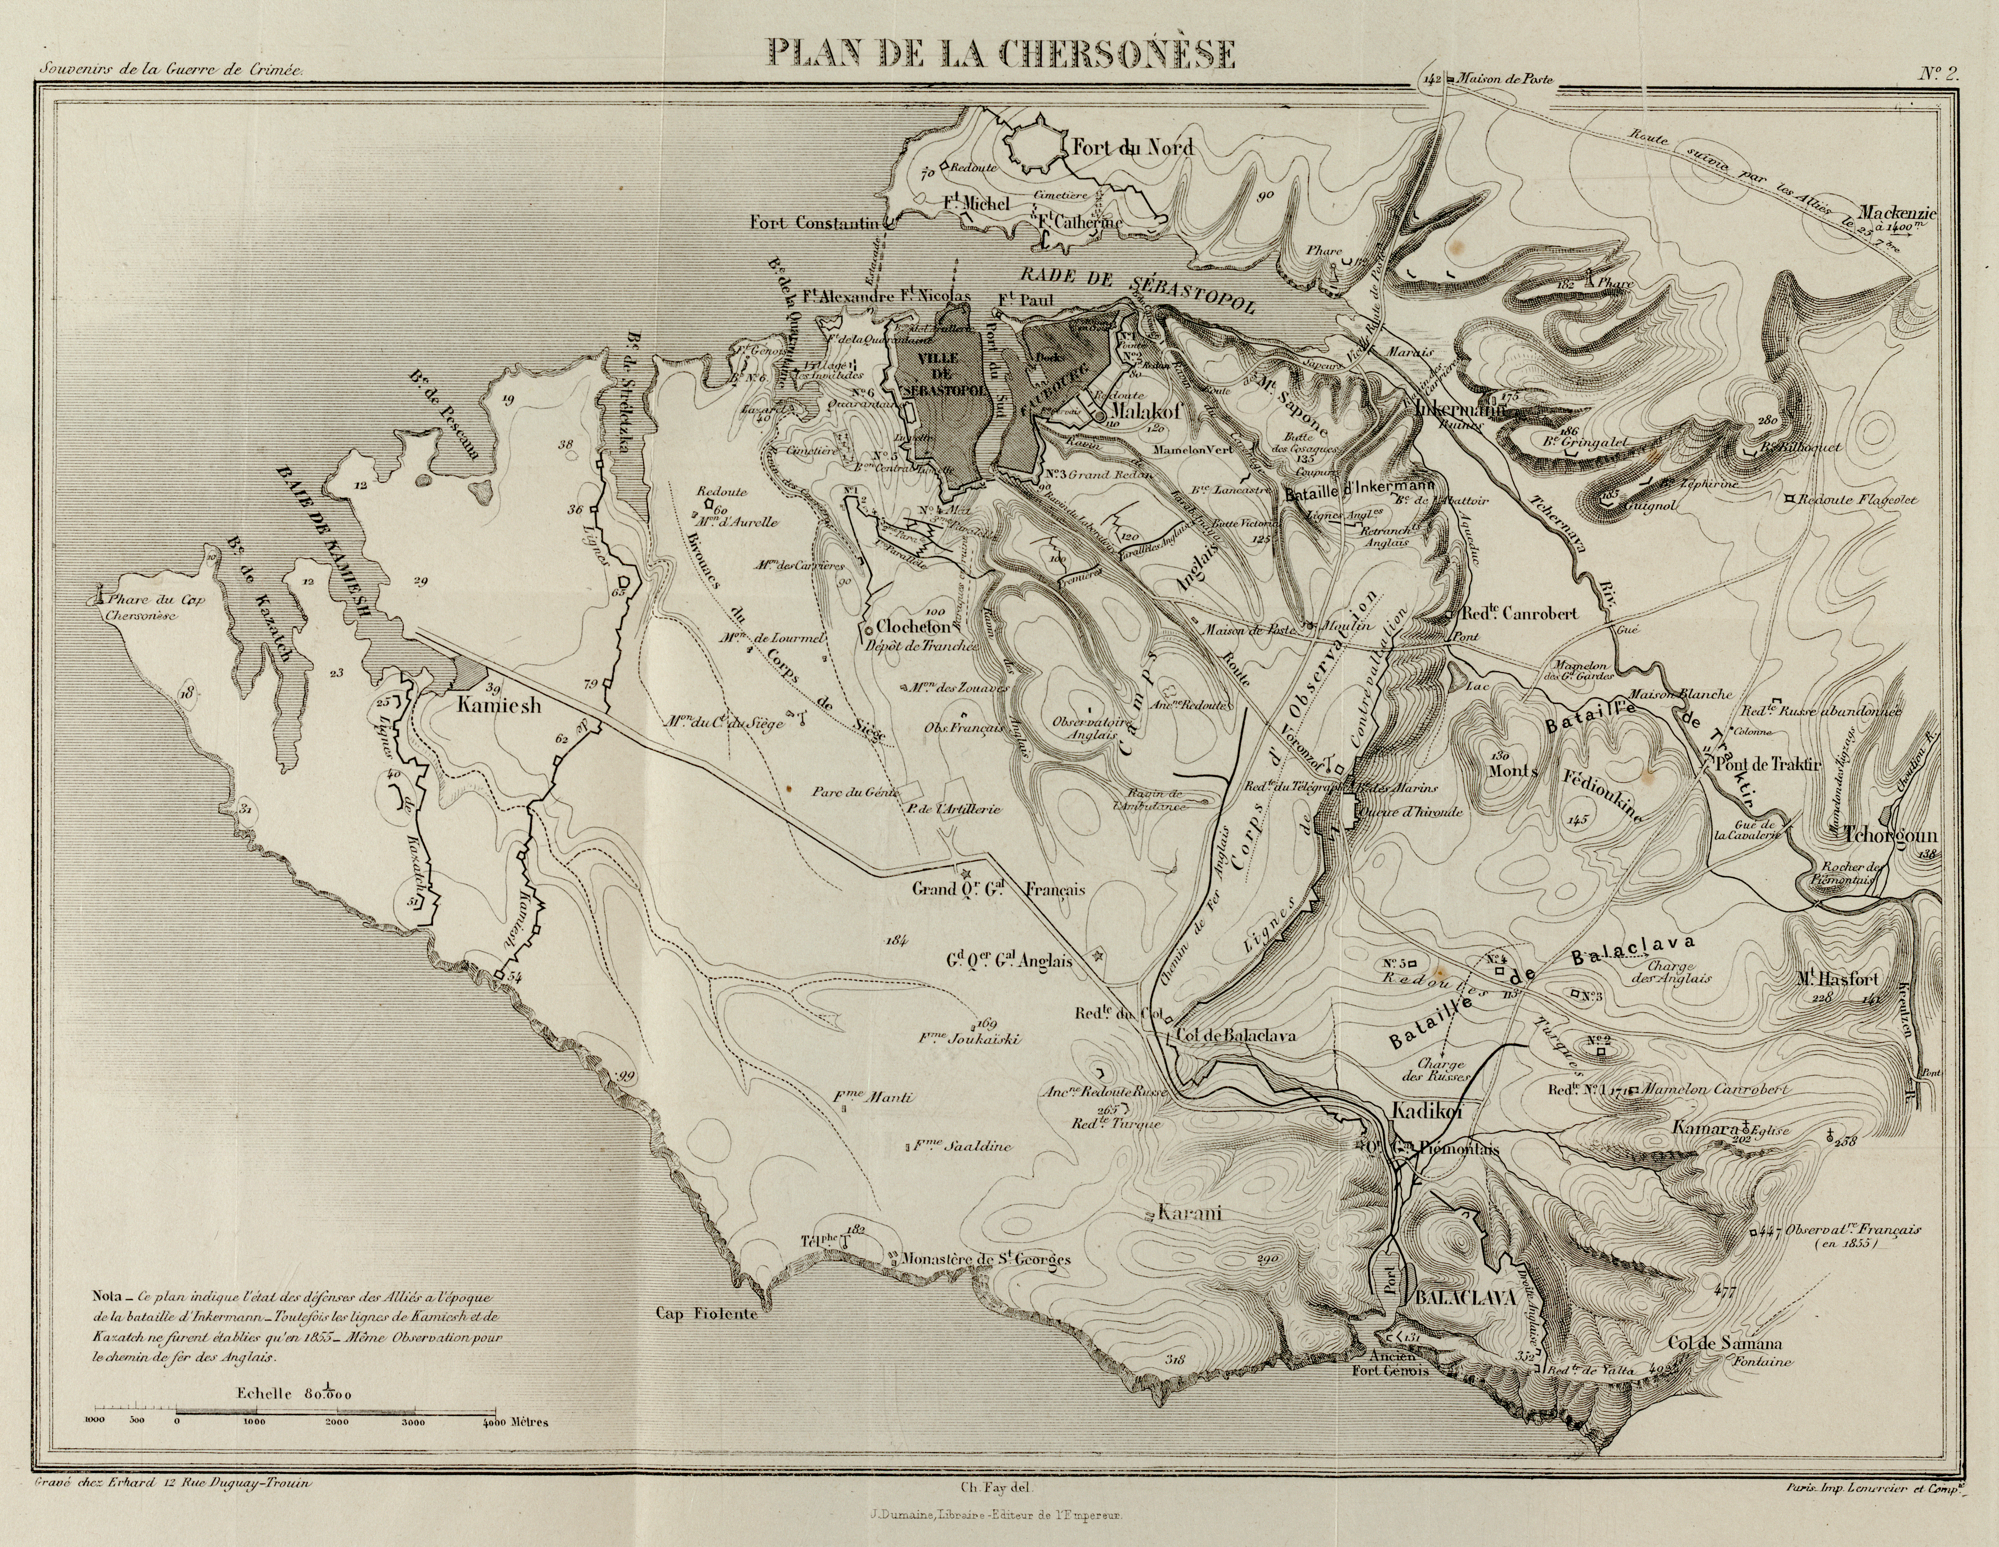 Francuska mapa wojskowa z 1855 roku, pokazująca okolice Sewastopola (u góry, w środku) i Bałakławę (w prawym dolnym rogu). Schematycznie zaznaczono przebieg bitwy pod Bałakławą